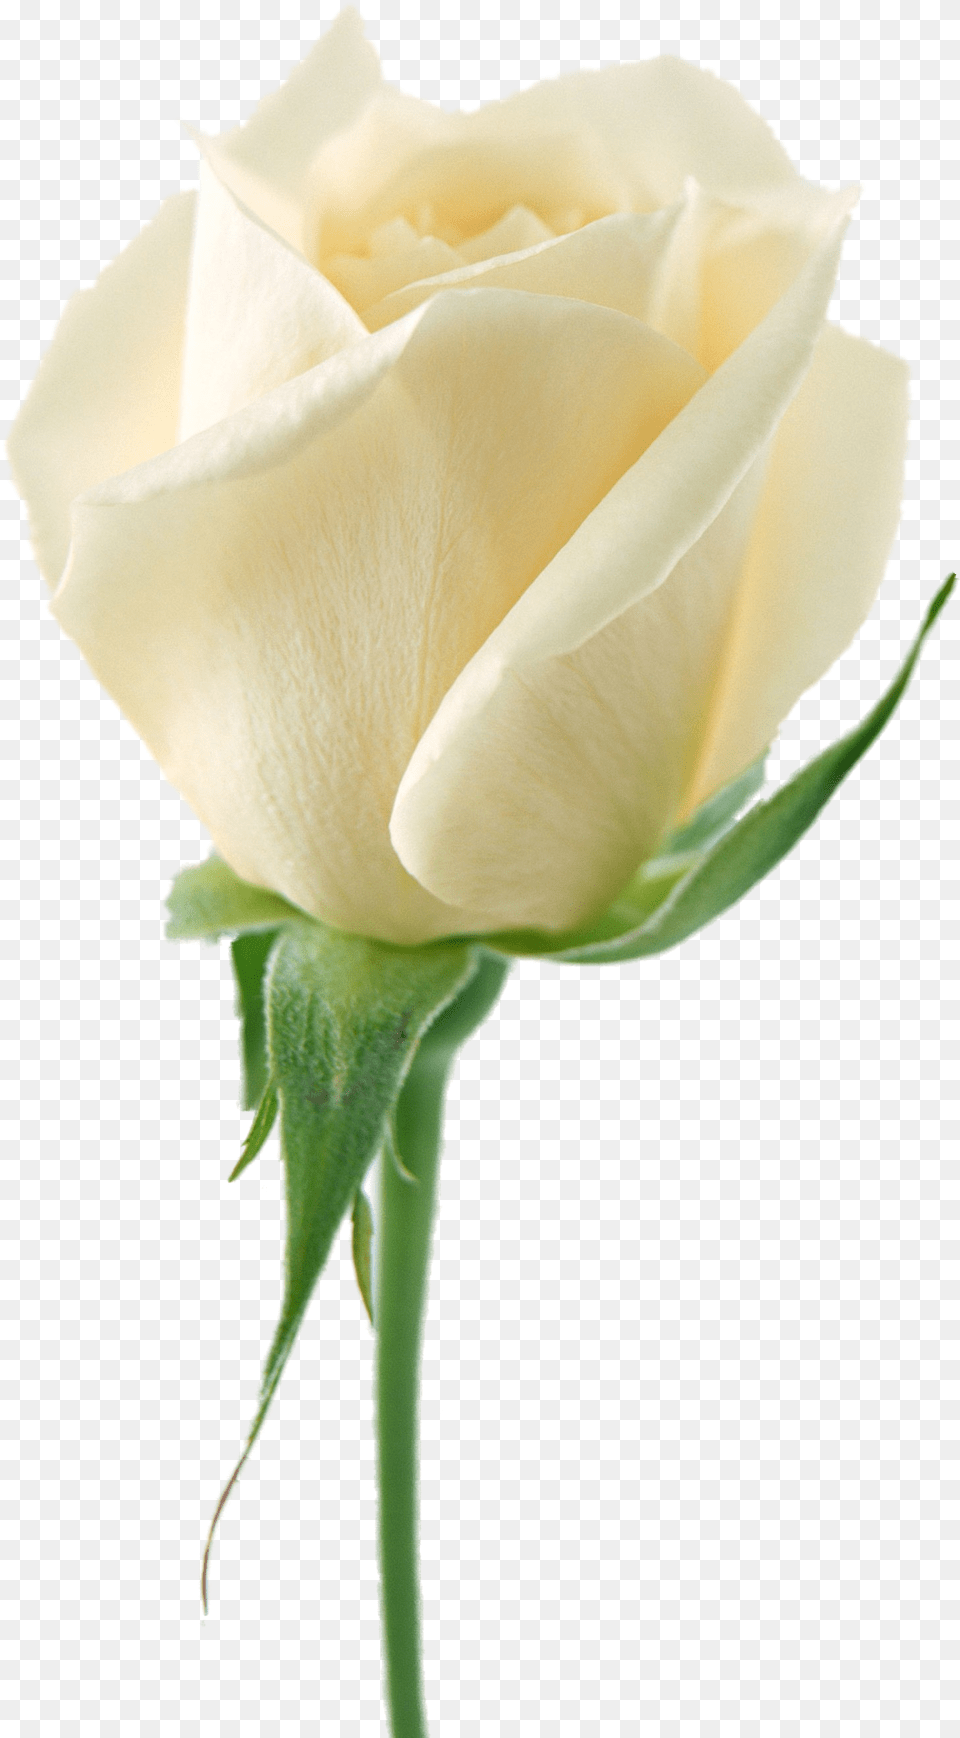 White Rose Flower White Rose Flower, Plant Png Image